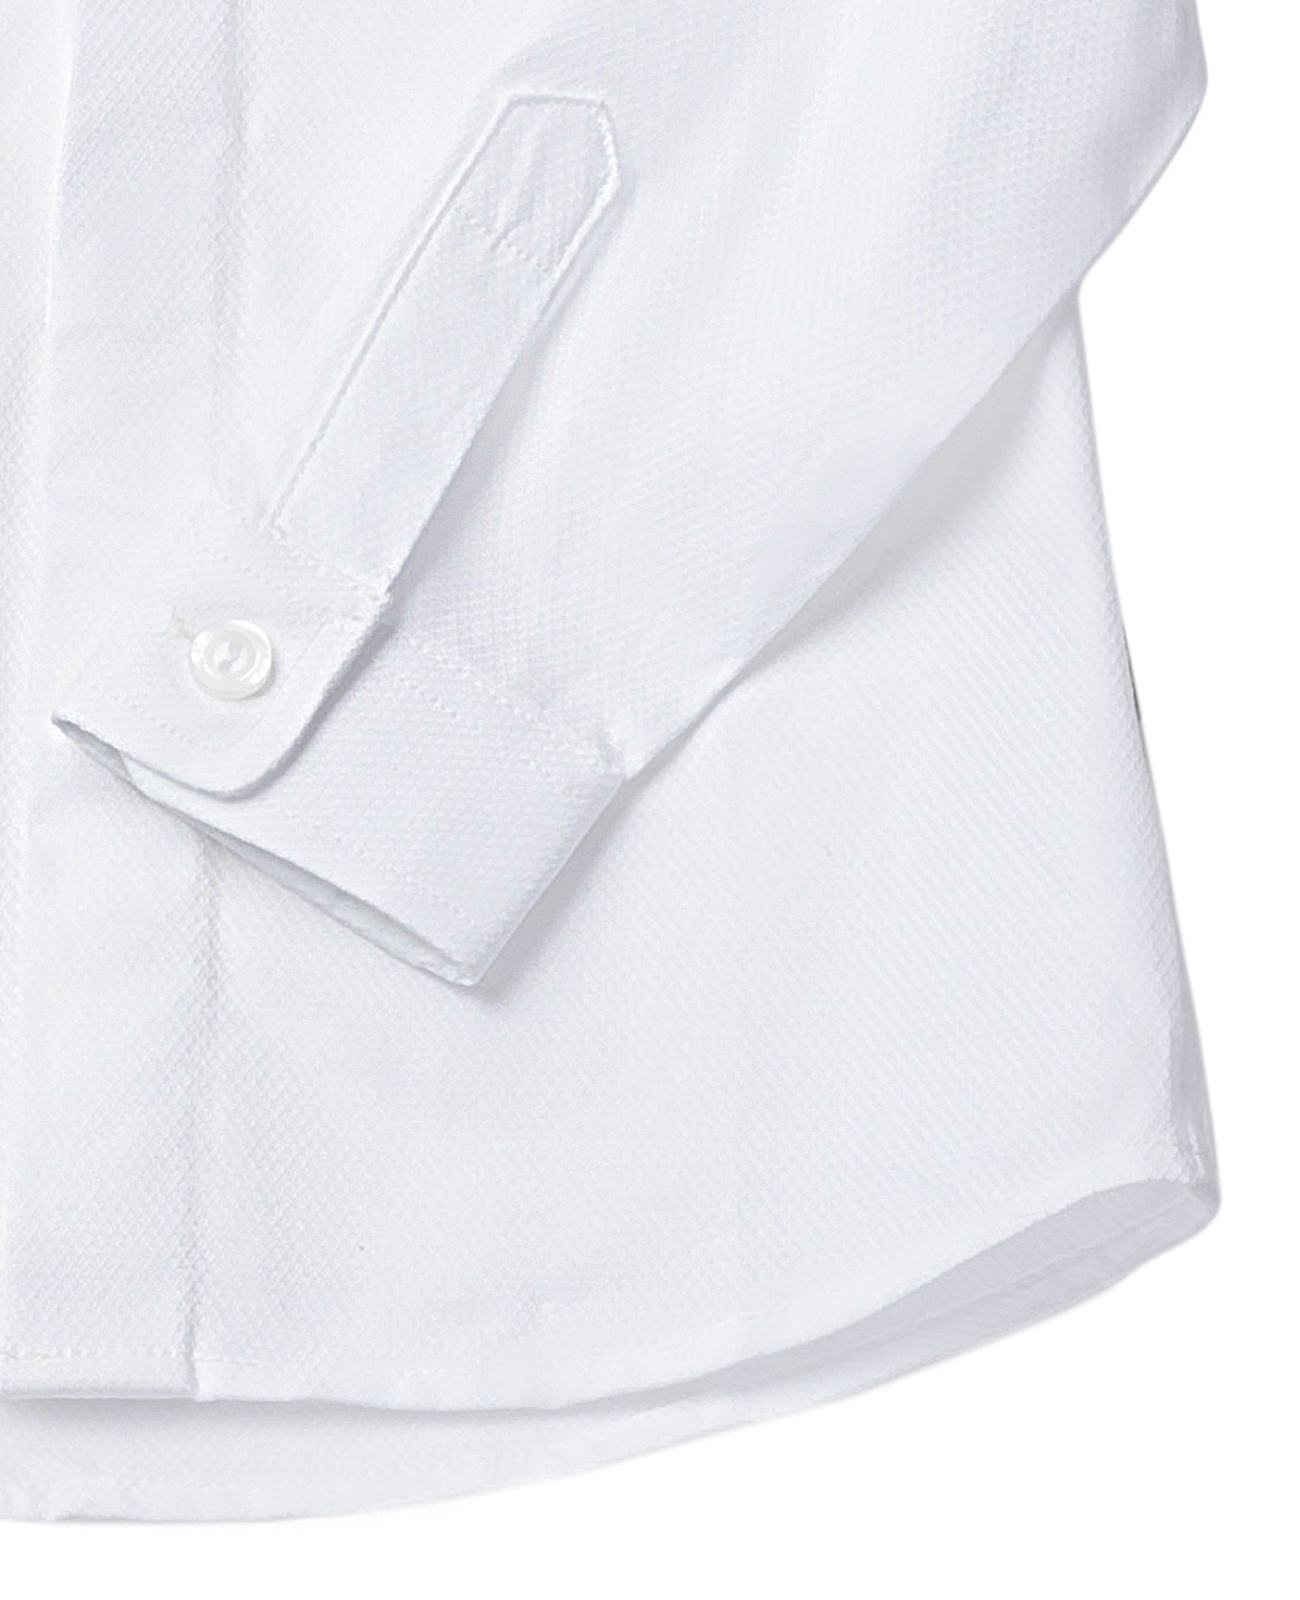 Белая рубашка Gulliver 120GPBMC2301, размер 122, цвет белый - фото 3